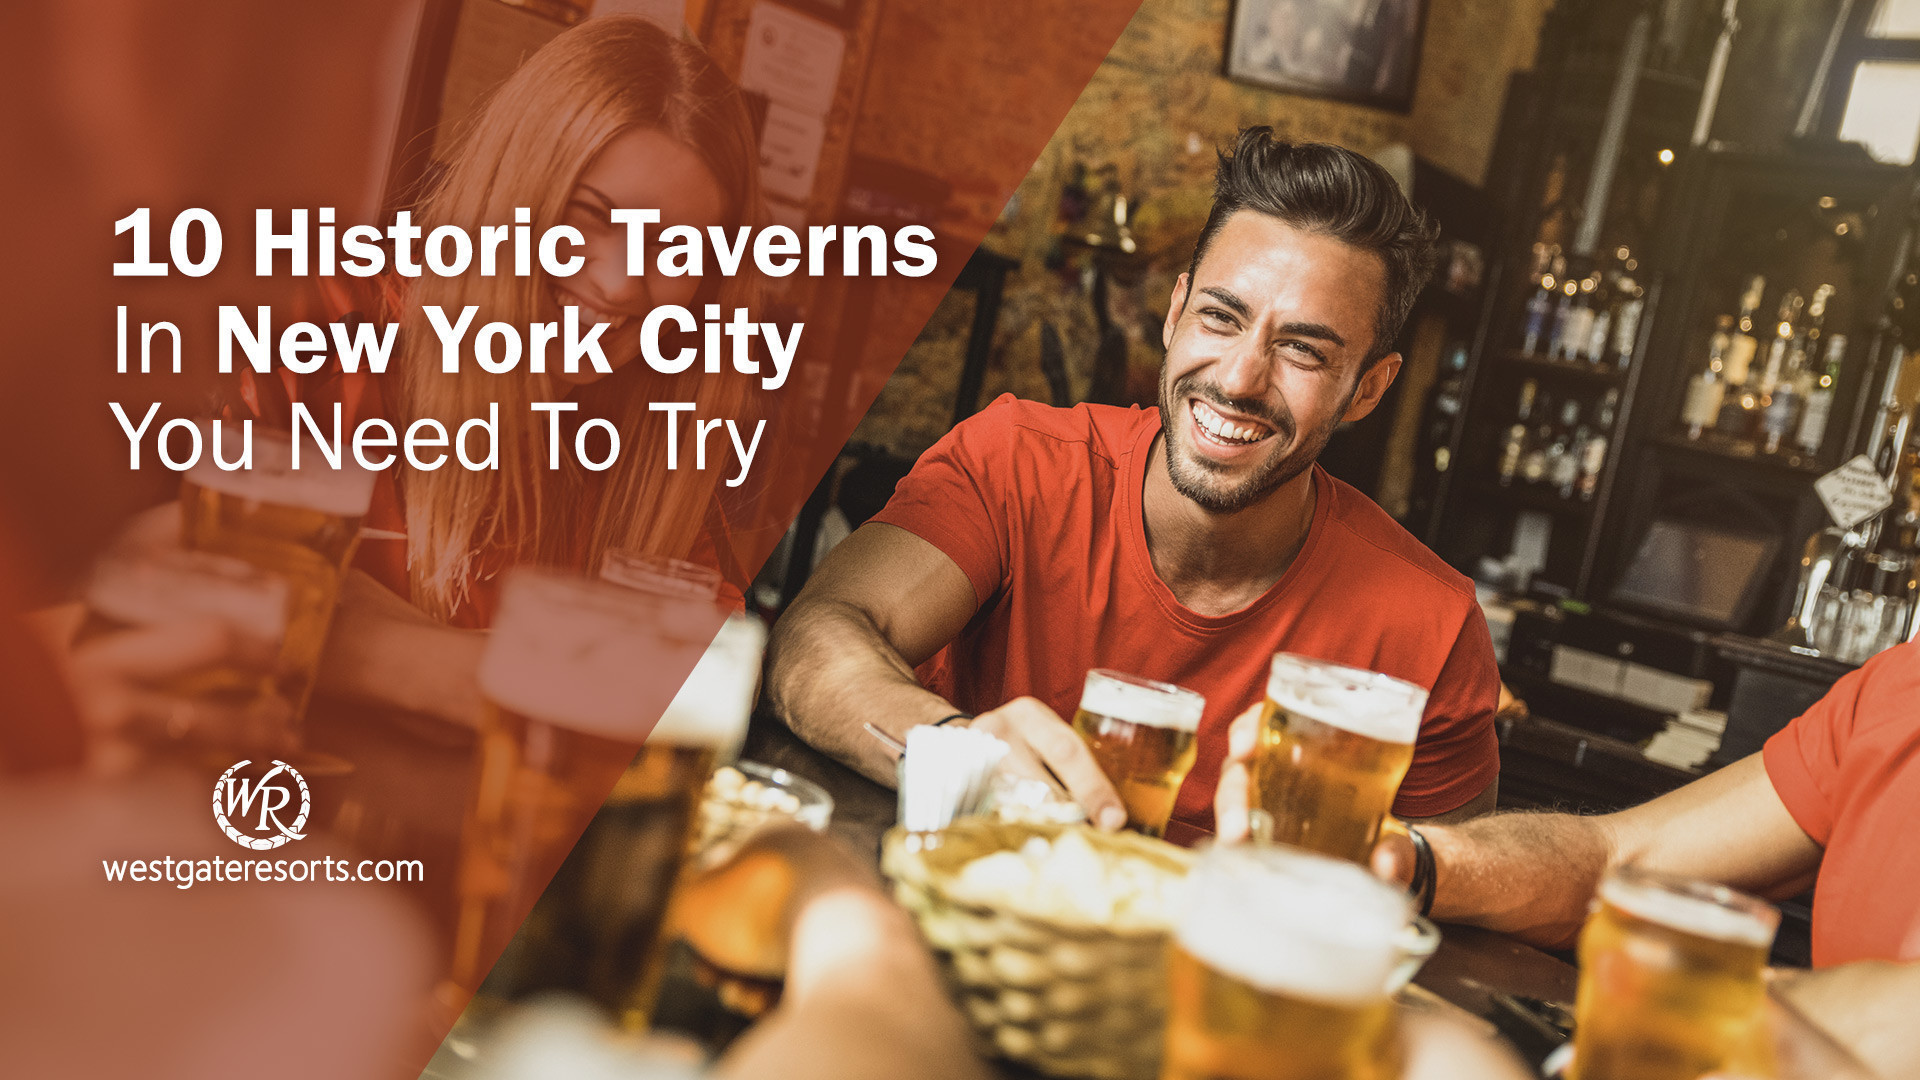 10 tabernas históricas en la ciudad de Nueva York que debes probar | Las mejores tabernas antiguas de Nueva York